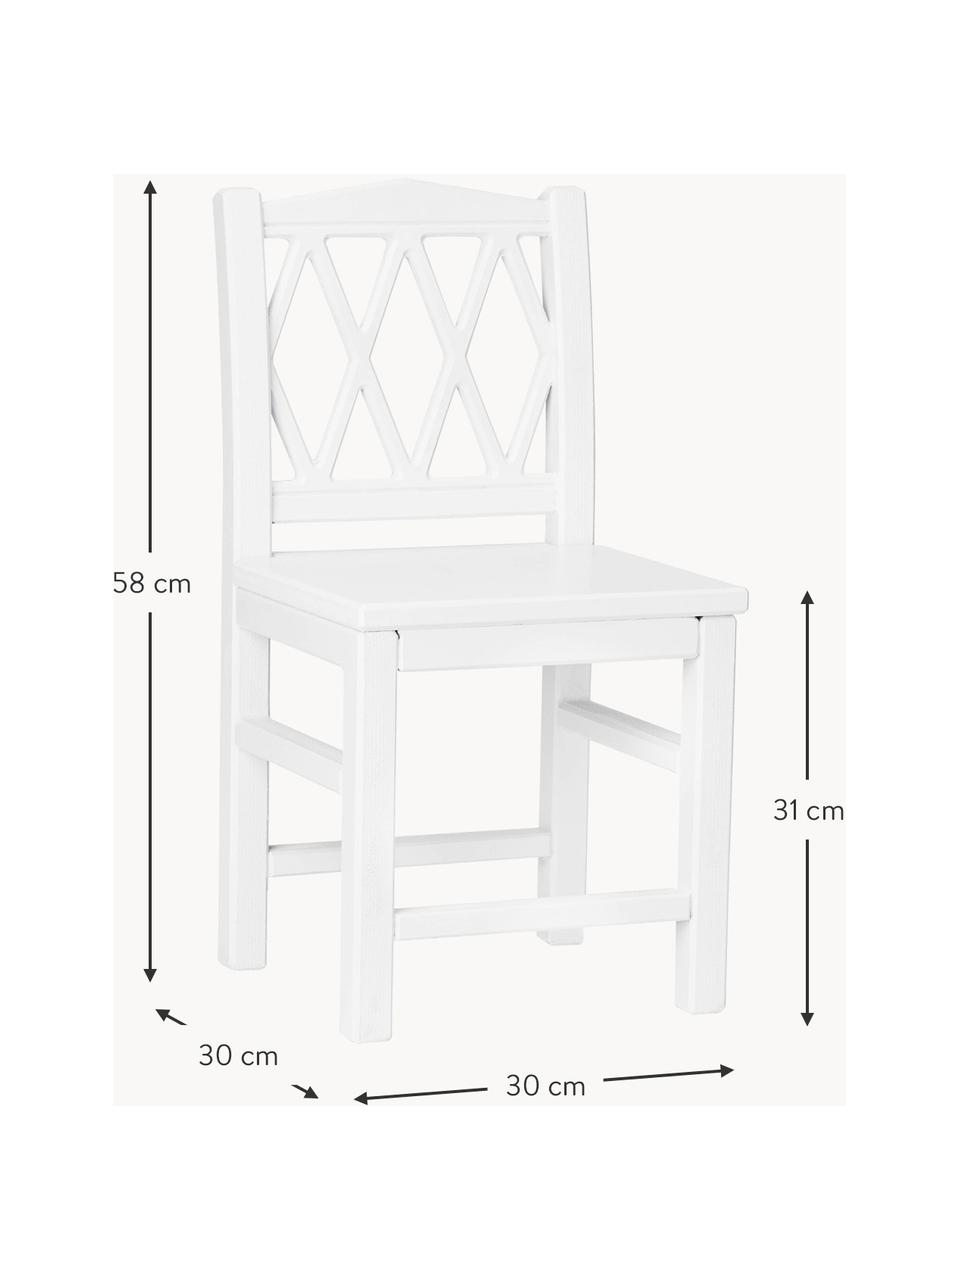 Detská stolička Harlequin, Brezové drevo, drevovláknitá doska strednej hustoty (MDF), natretá farbou bez obsahu VOC, Brezové drevo, biela lakované, Š 30 x V 58 cm